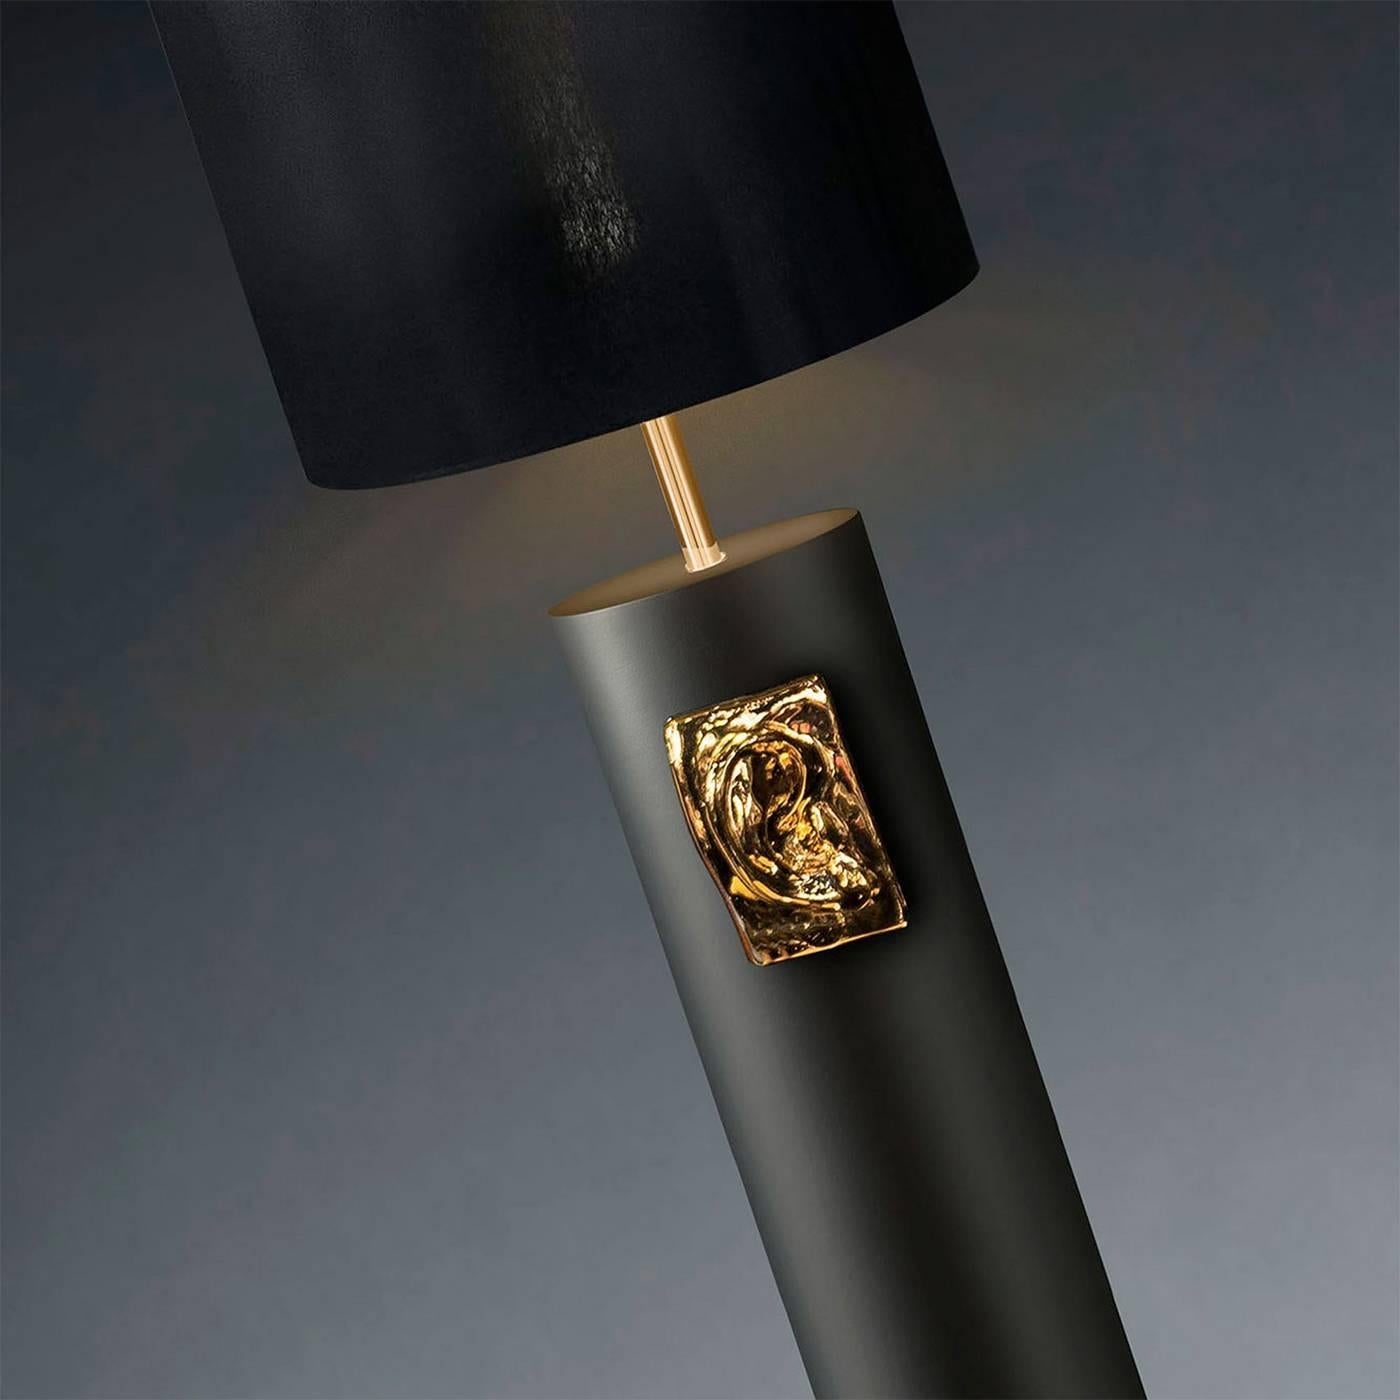 Italian David Ear Floor and Table Ceramic Lamp